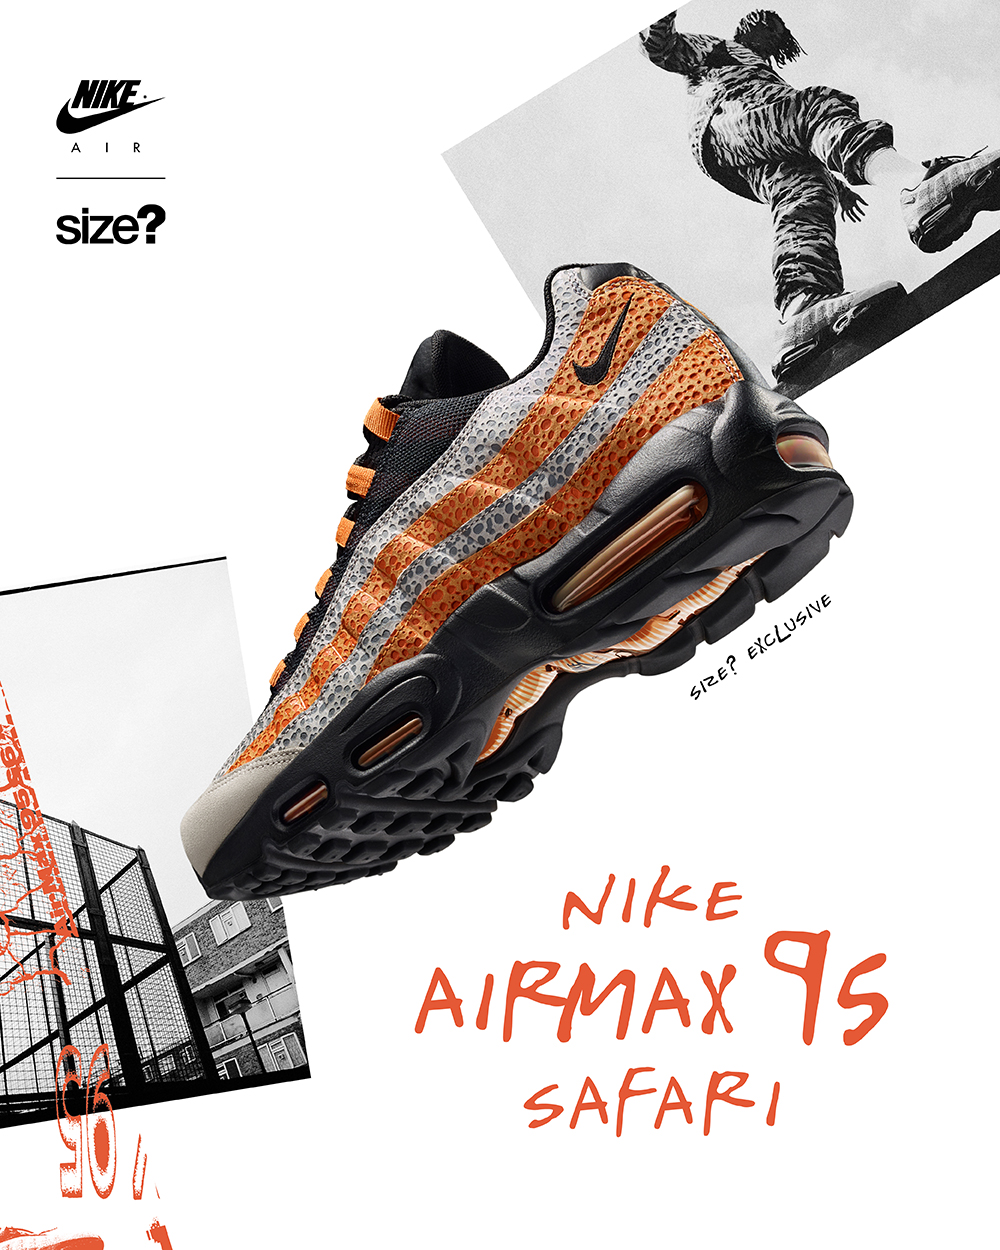 Nike Air Max 95 Safari Release Date